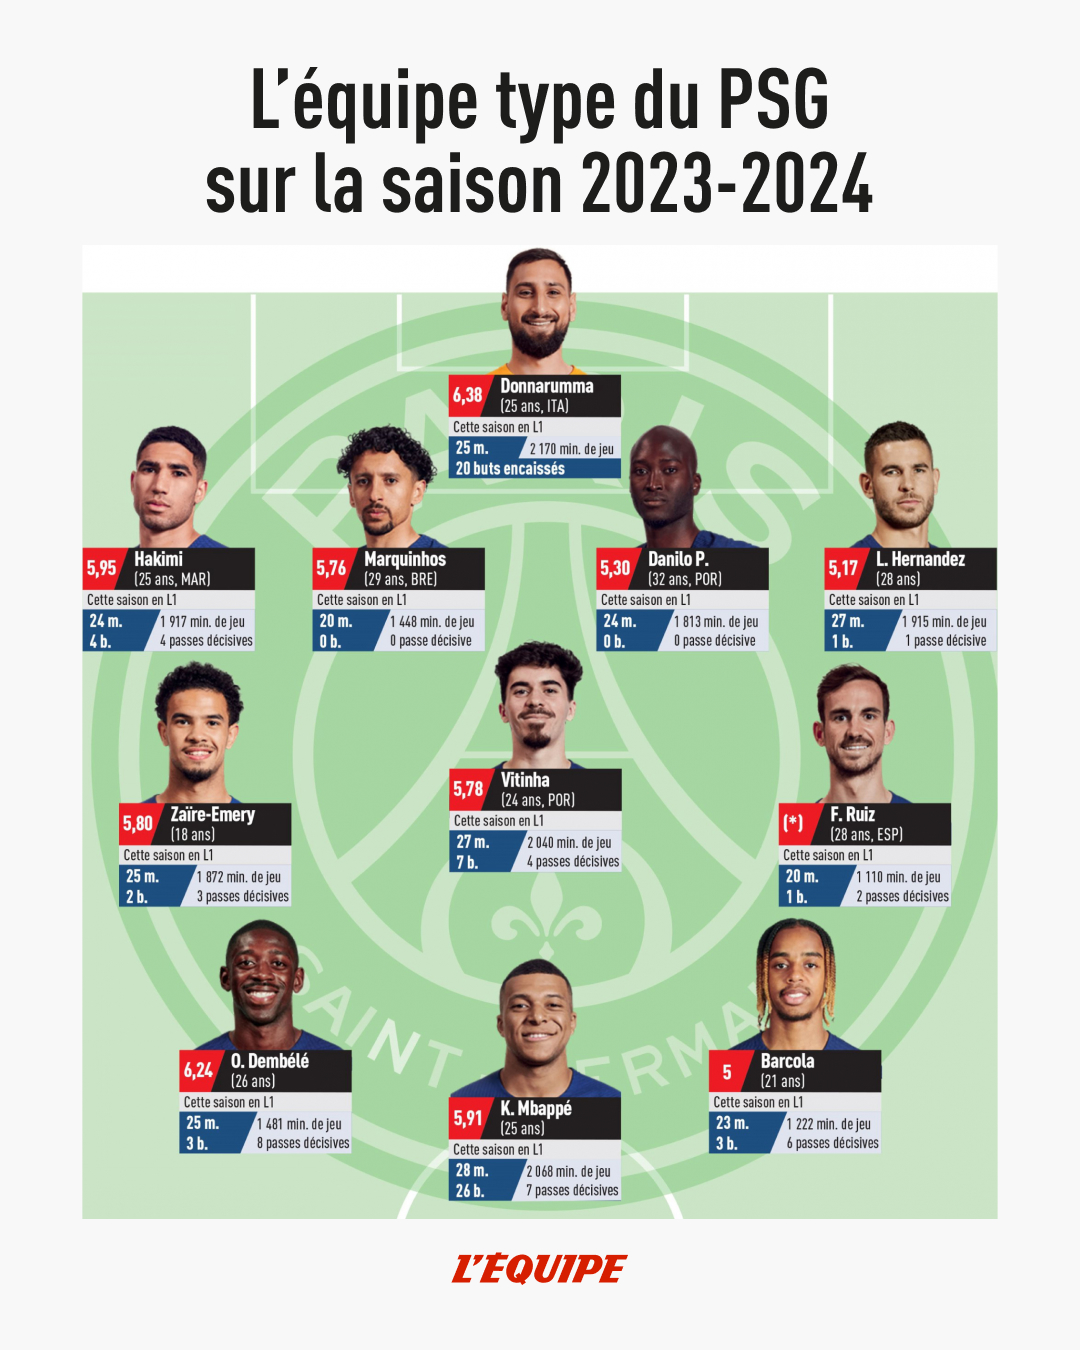 프랑스 언론 르퀴프가 30일(한국시간) 2023-2024시즌 리그1 우승을 차지한 PSG의 올해의 팀을 선정했다. 이강인은 베스트 11에 뽑히지 못했다. 르퀴프